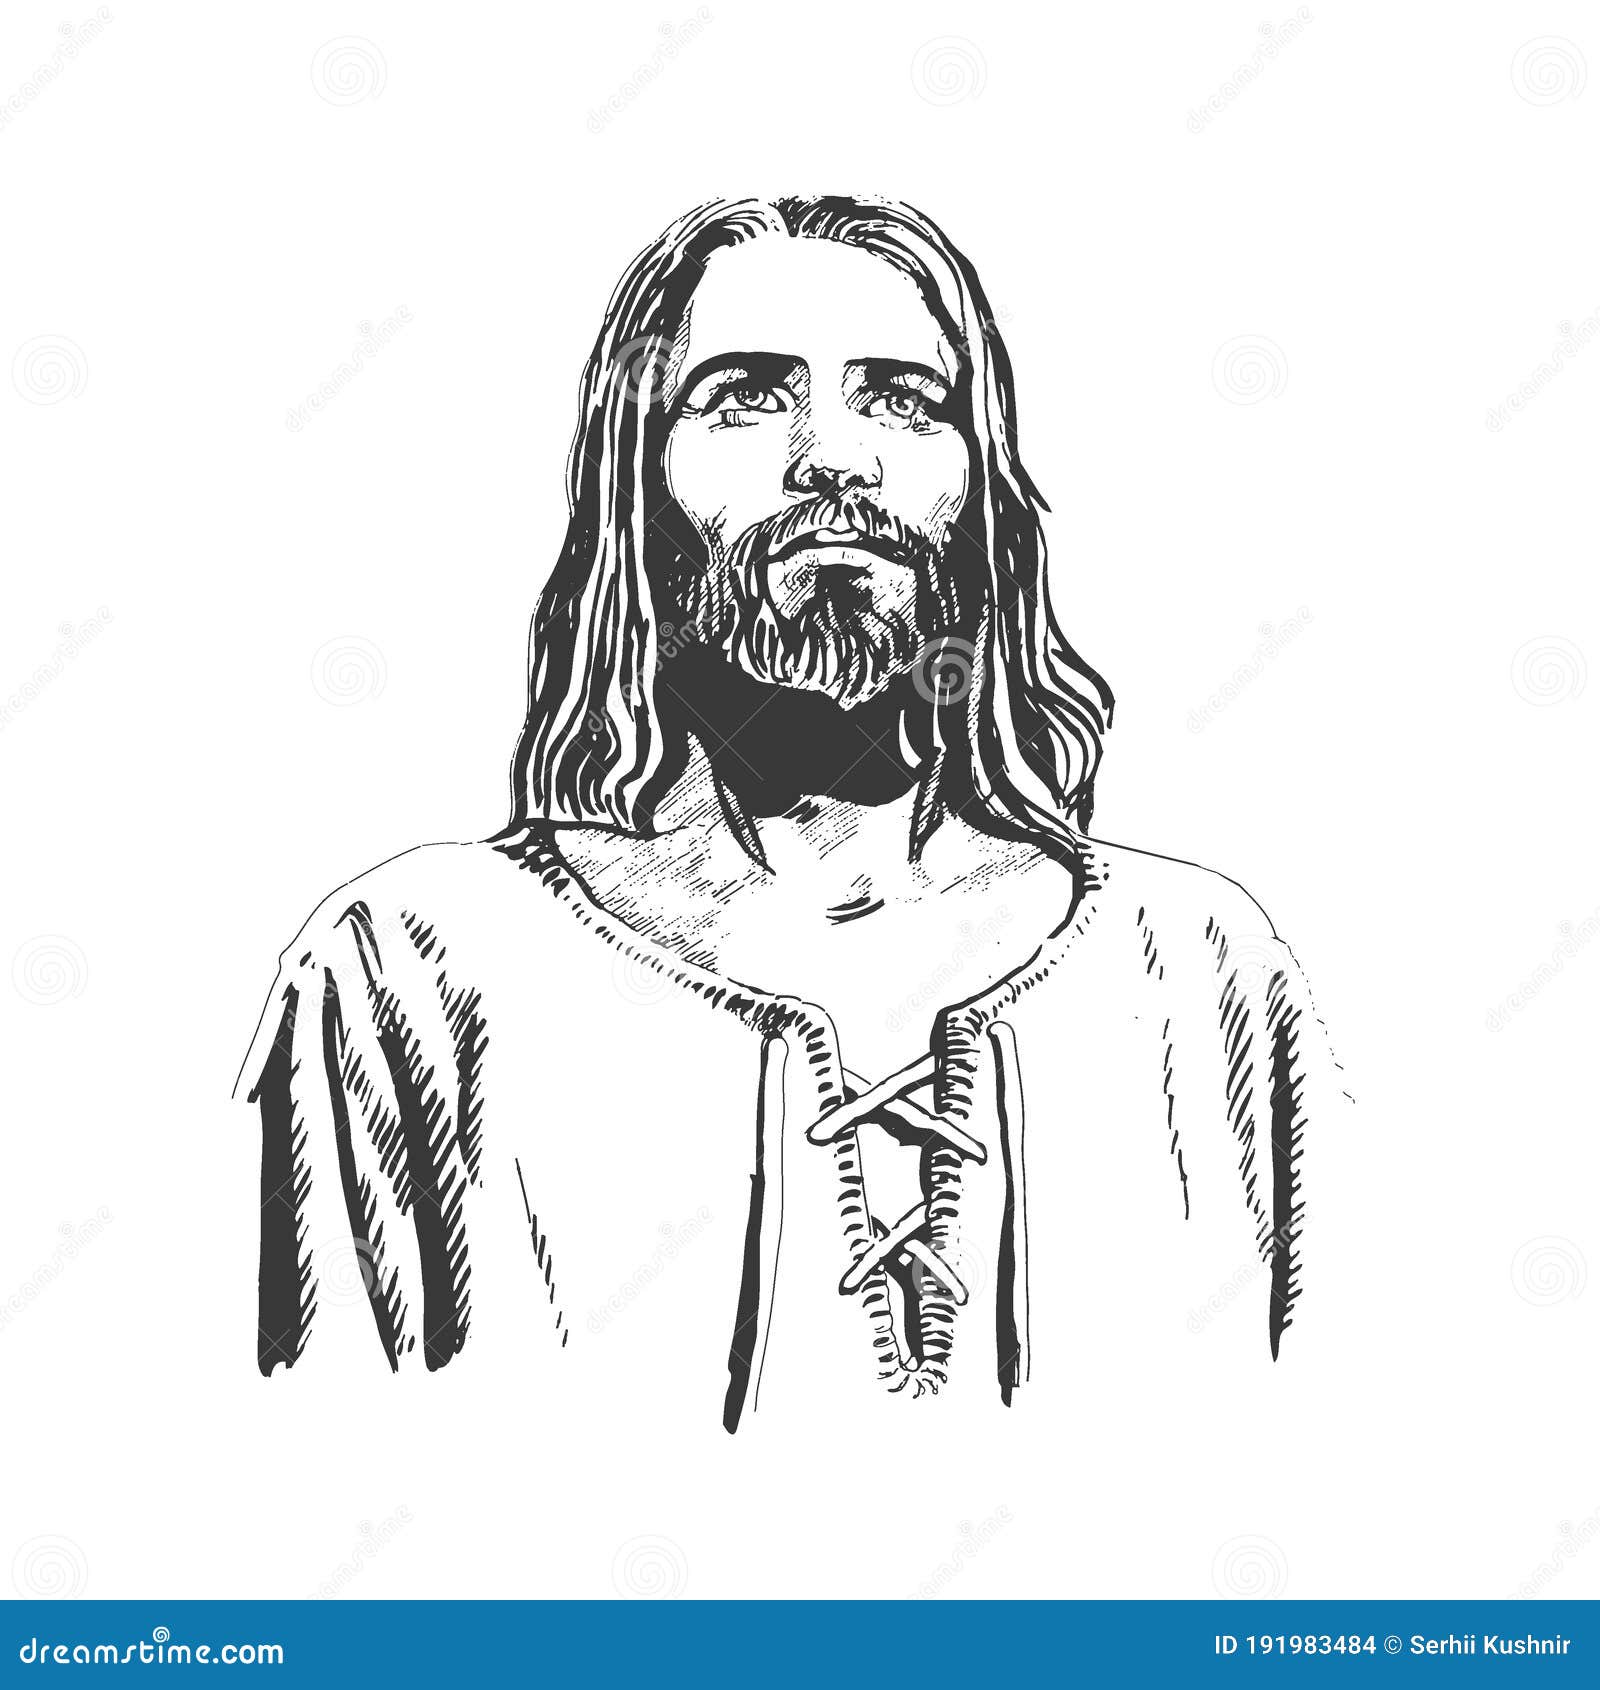 Jesus christ sketch Royalty Free Vector Image - VectorStock